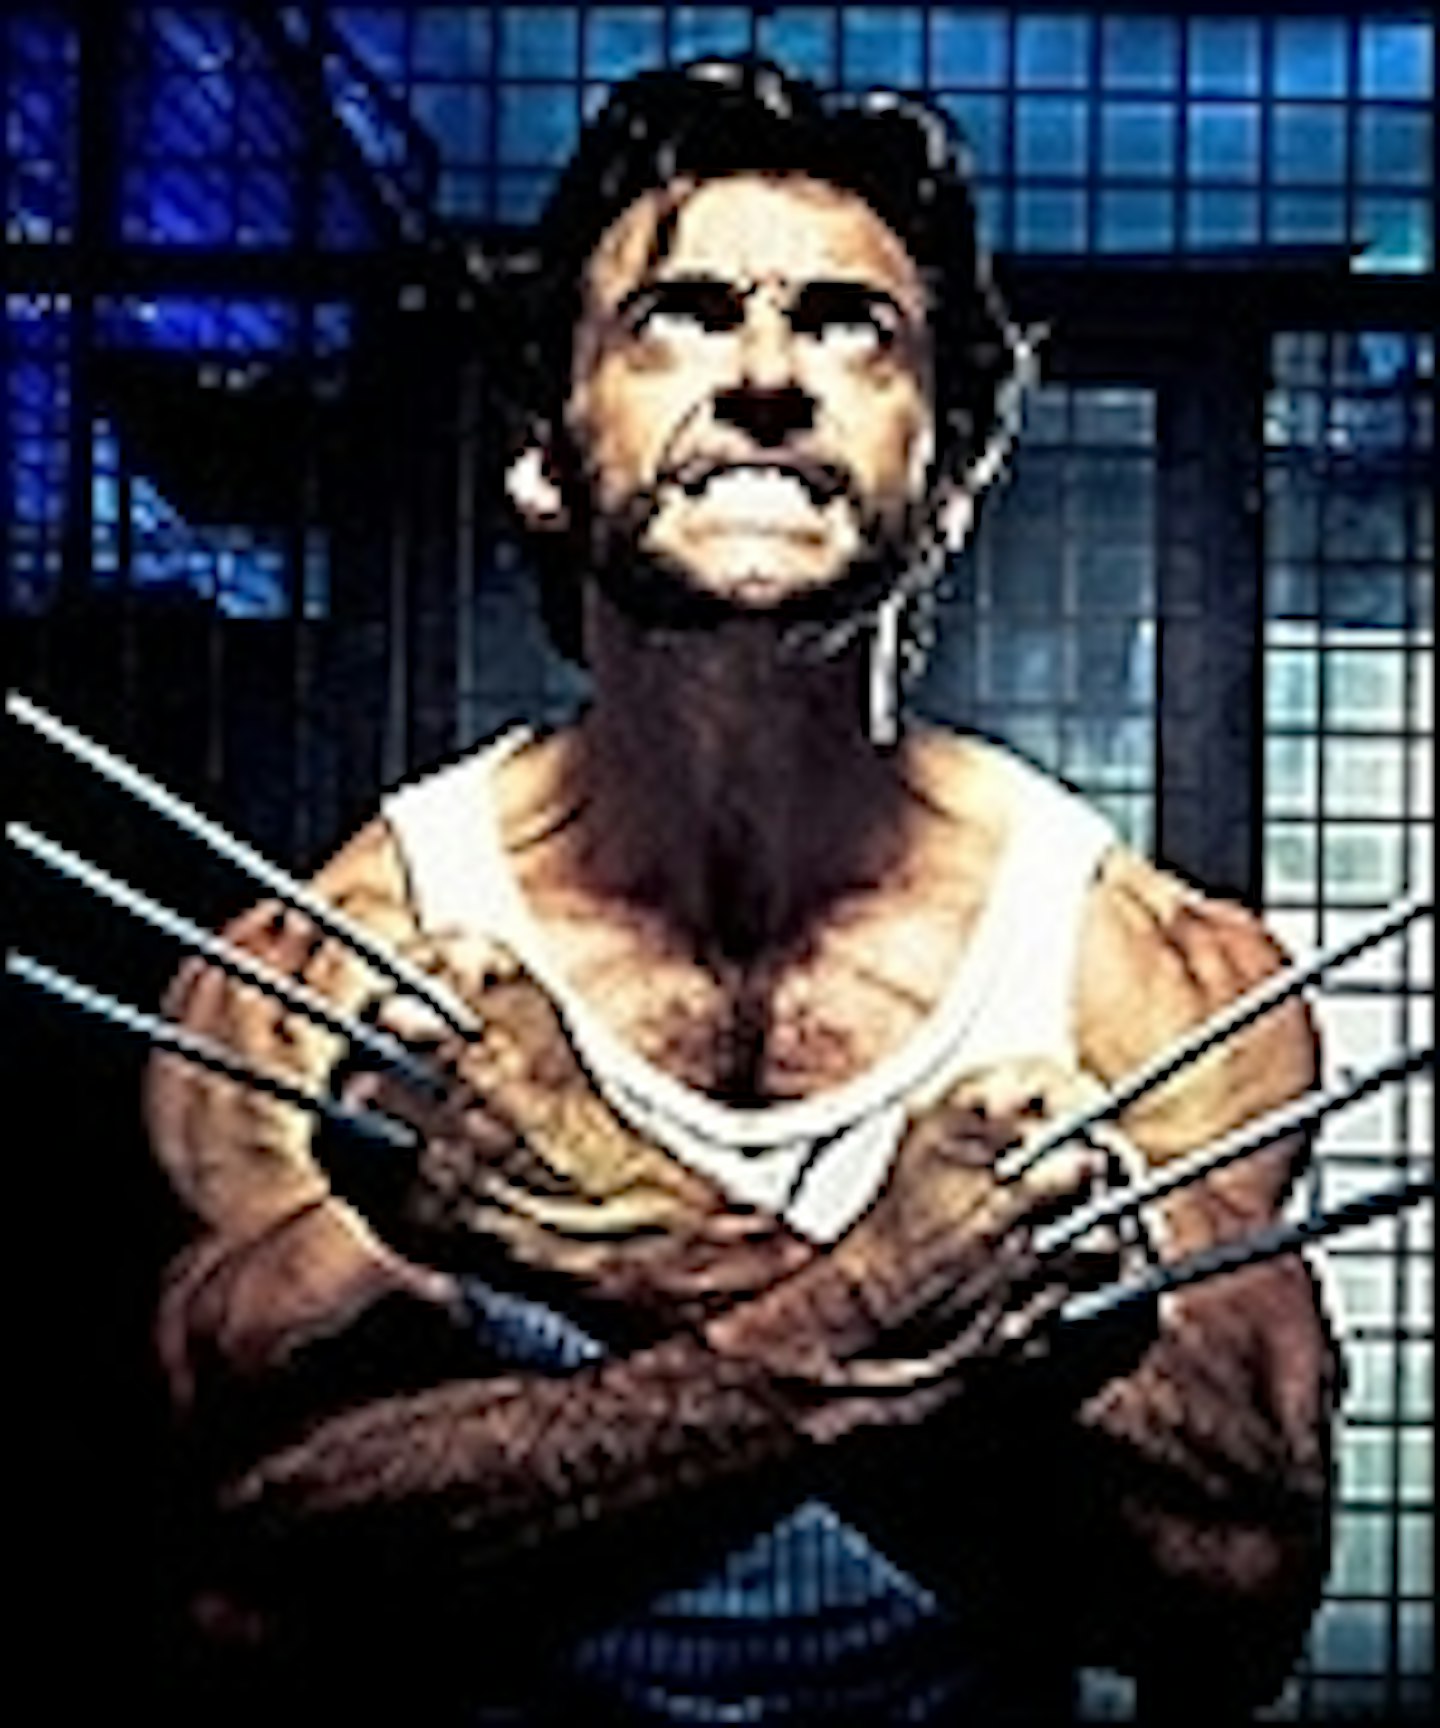 Wolverine: Origins TV Spot Now Online